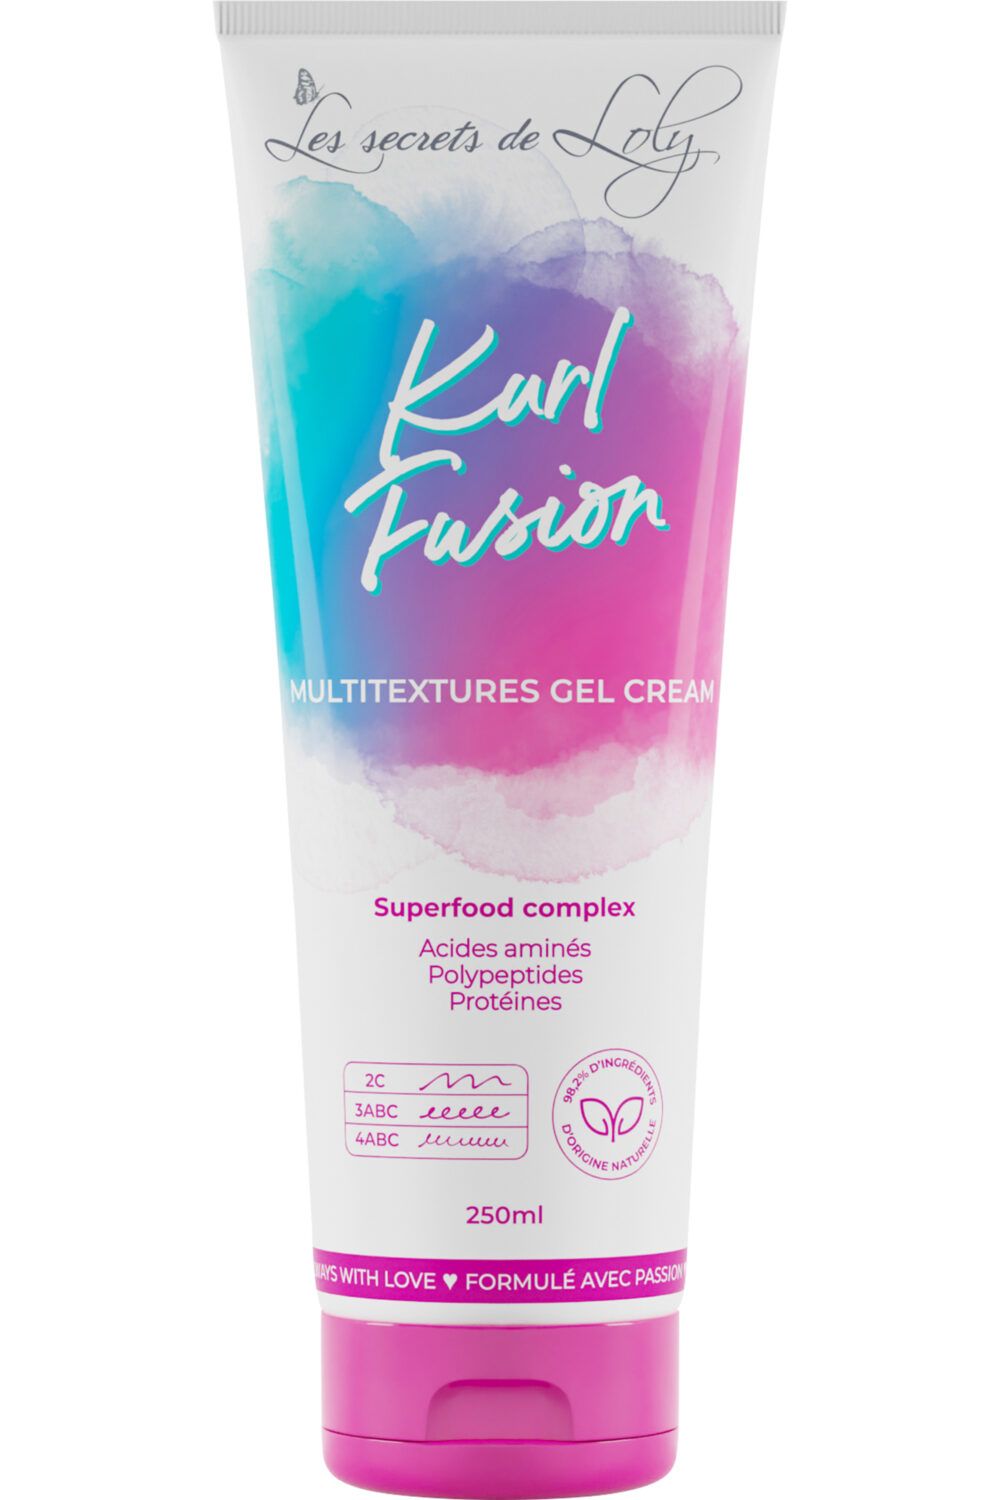 Les Secrets de Loly - Crème-gel multi textures Kurl Fusion